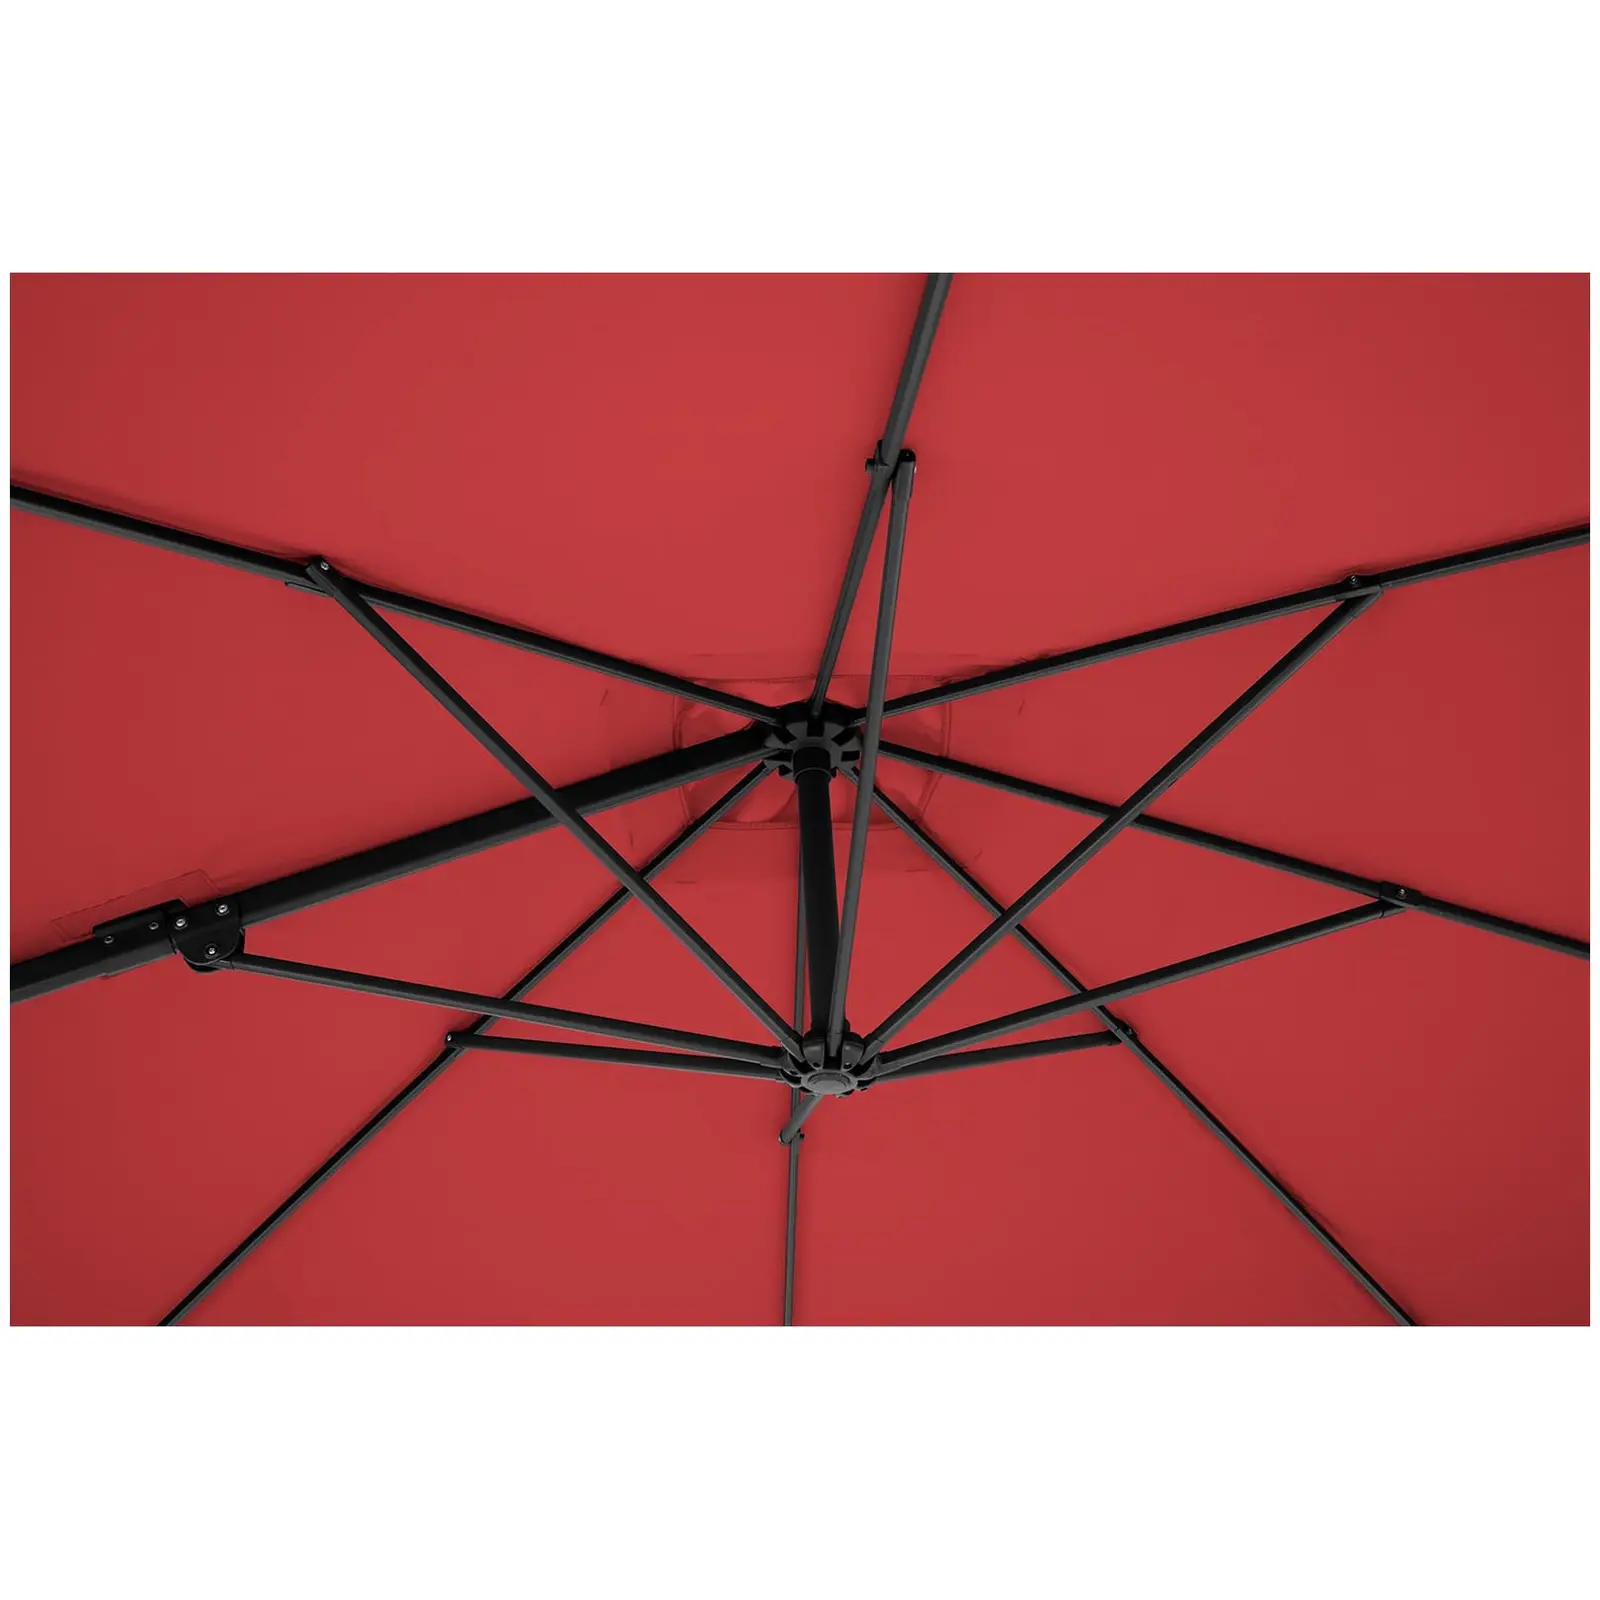 Occasion Parasol de jardin - Bordeaux - Carré - 250 x 250 cm - Pivotant